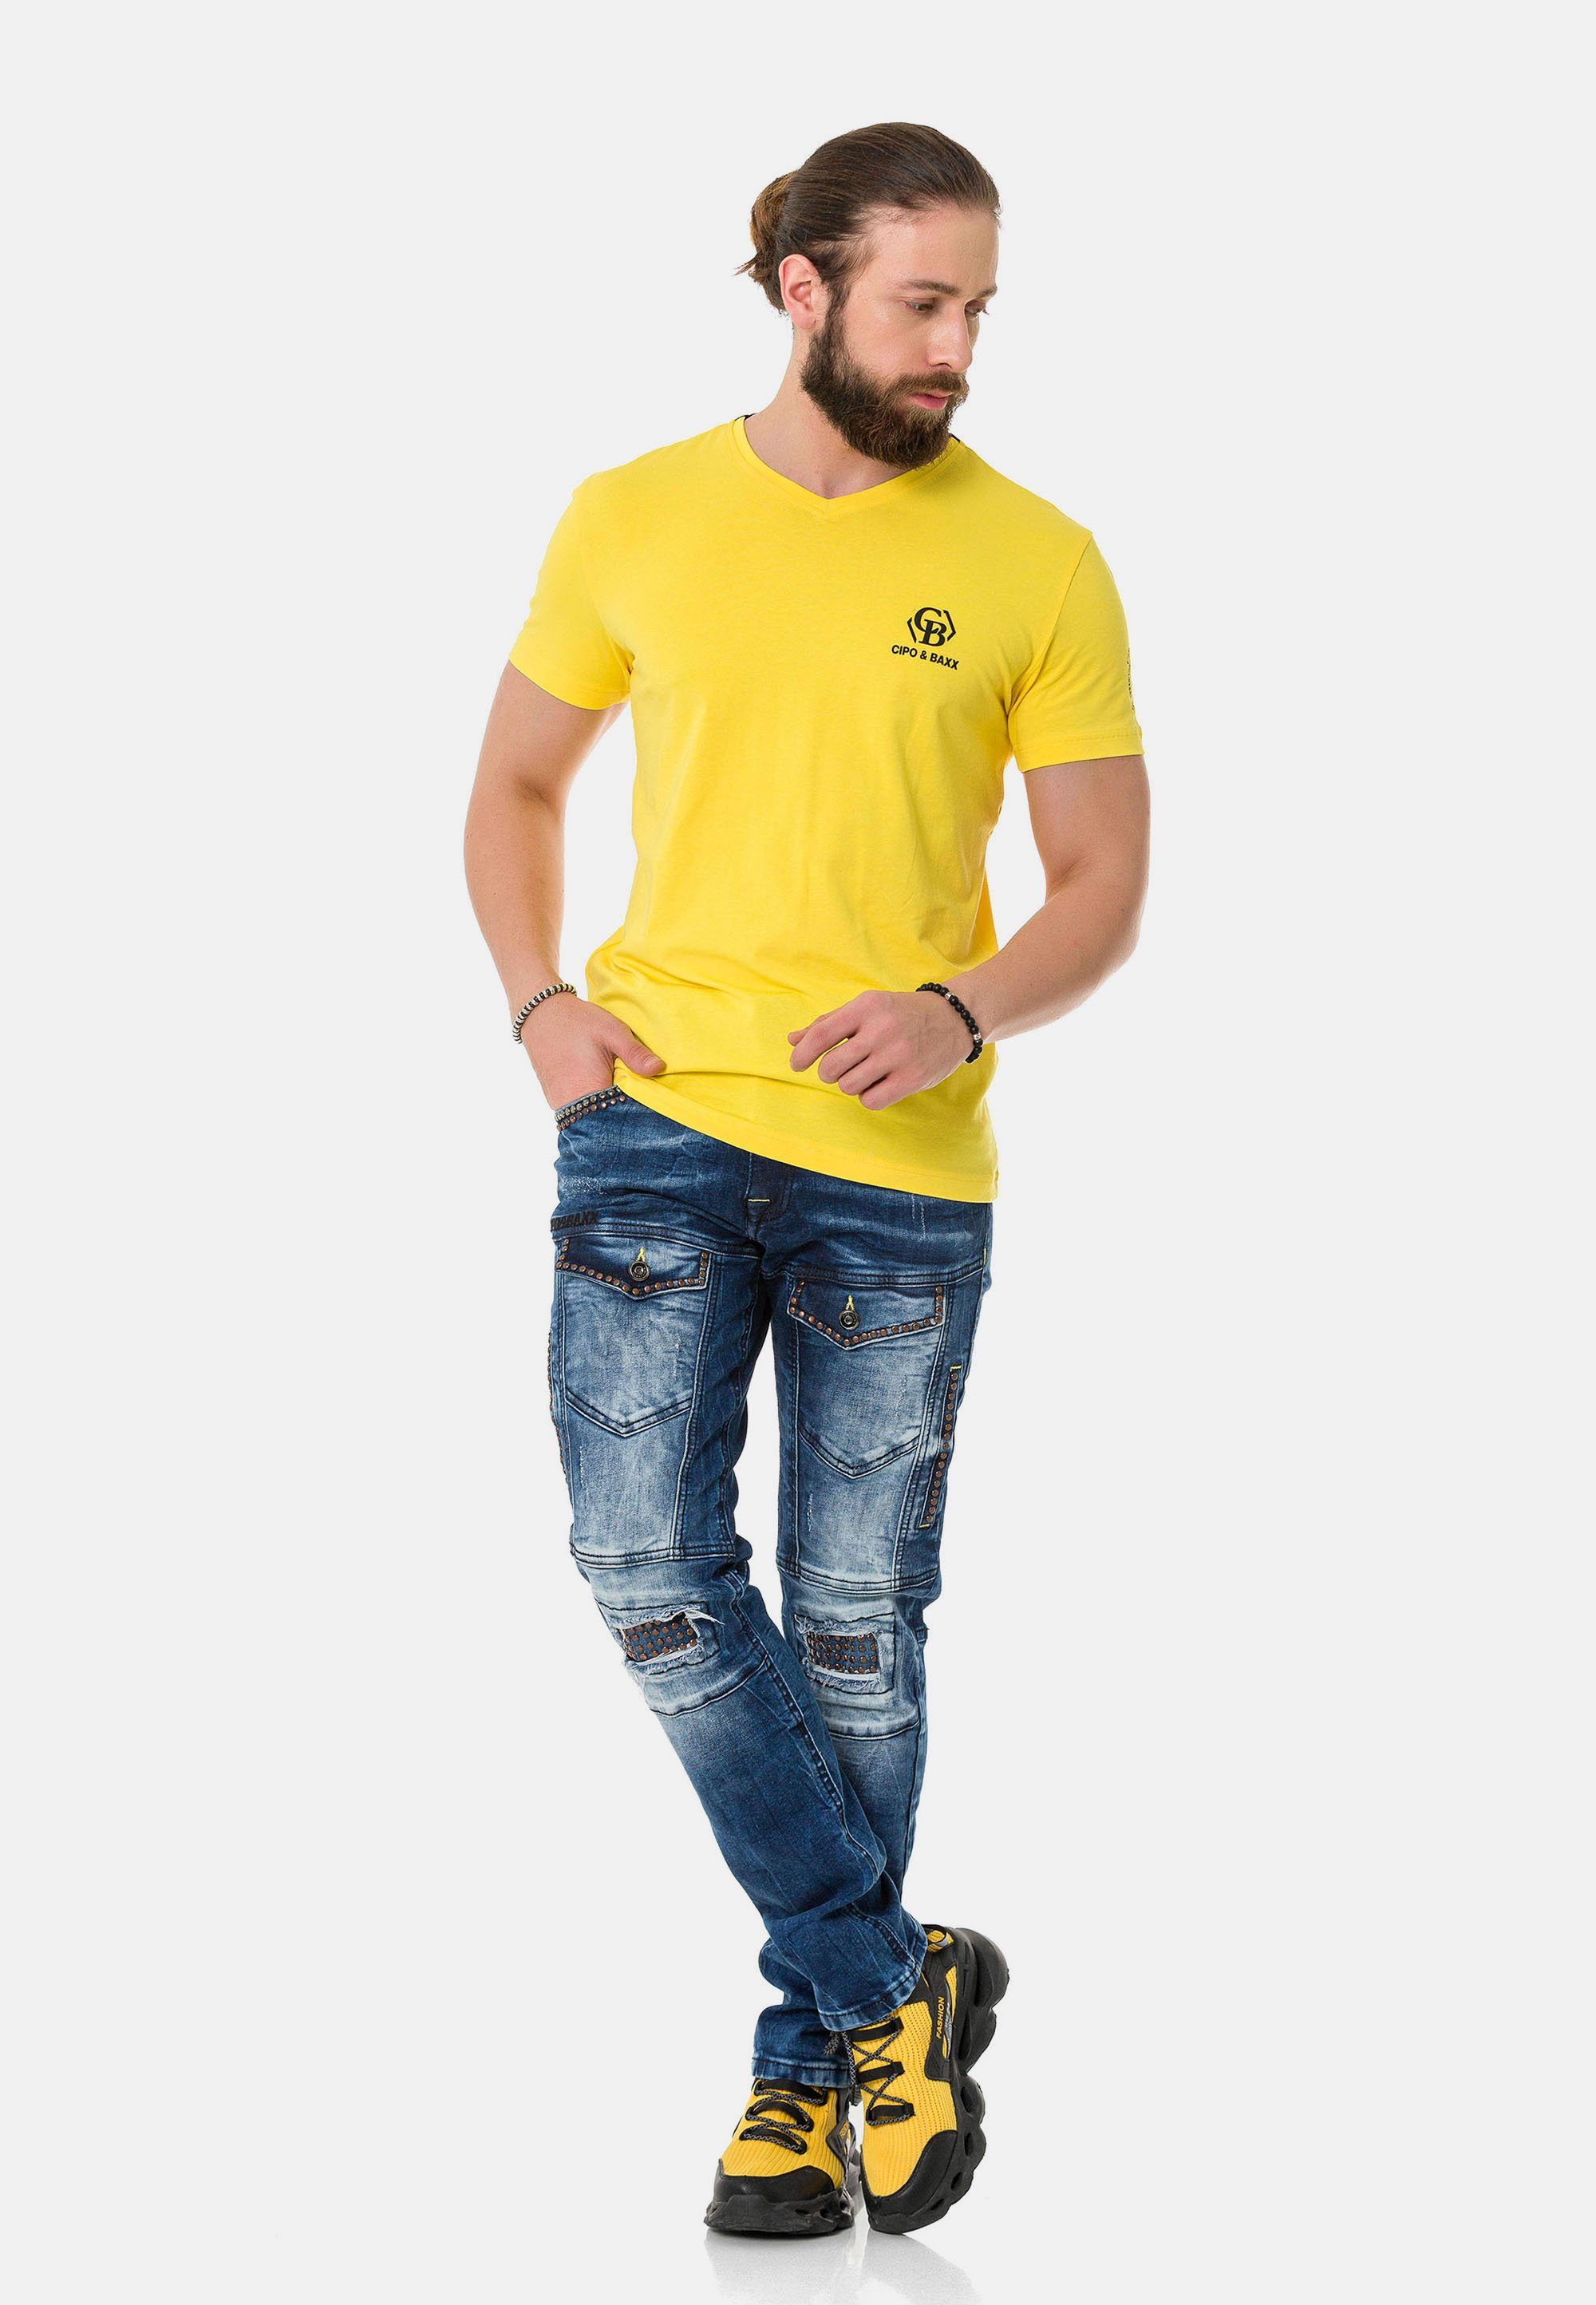 Markenlogos mit Cipo T-Shirt Baxx & gelb dezenten